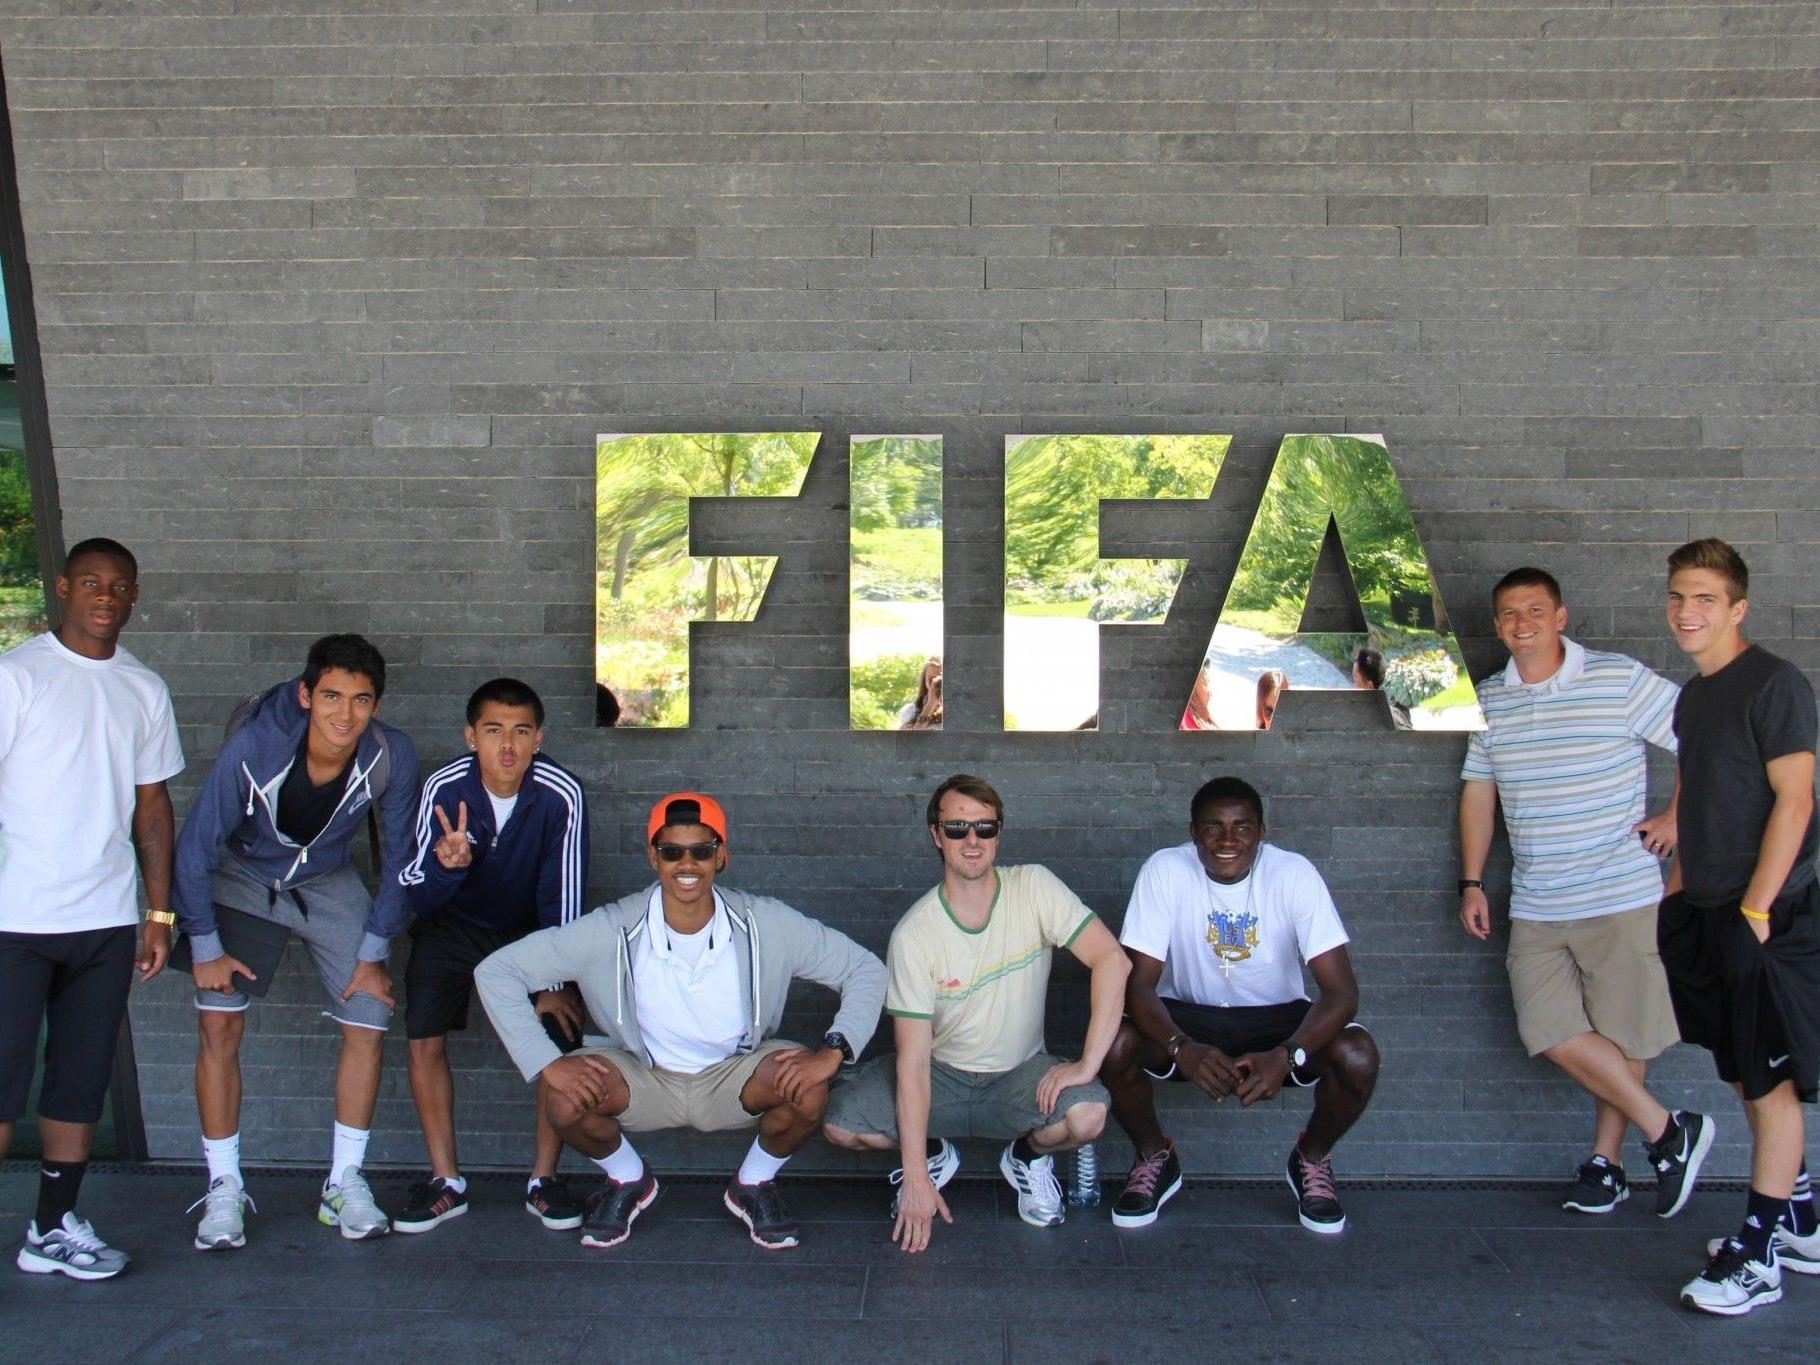 Der Besuch bei der FIFA-Zentrale in Zürich stand ebenfalls auf dem Programm